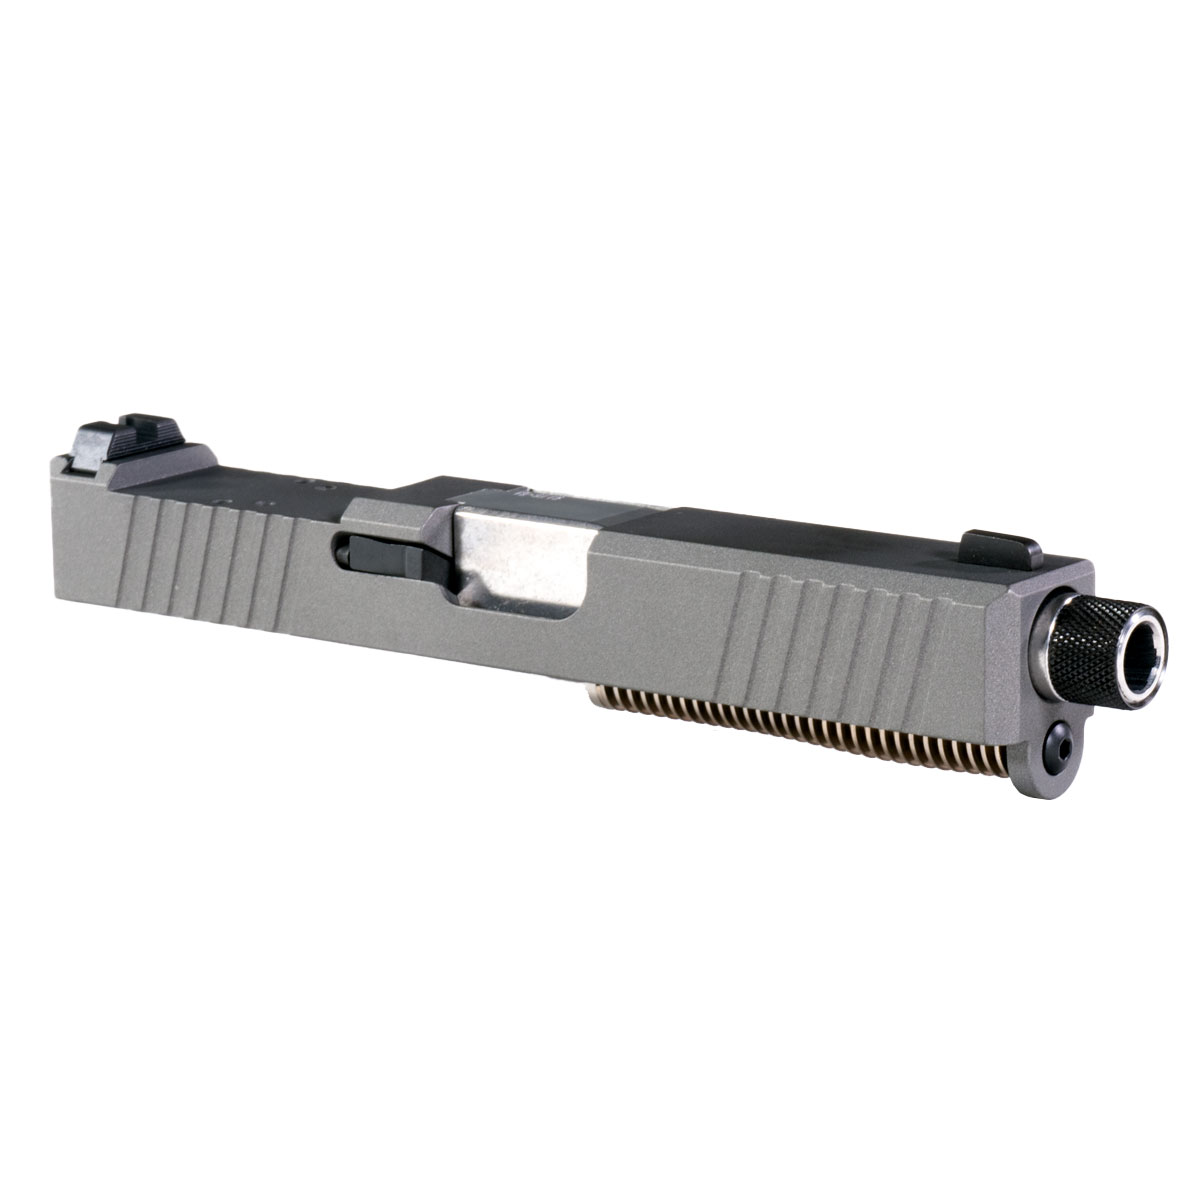 DTT 'Azurean' 9mm Complete Slide Kit - Glock 19 Gen 1-3 Compatible